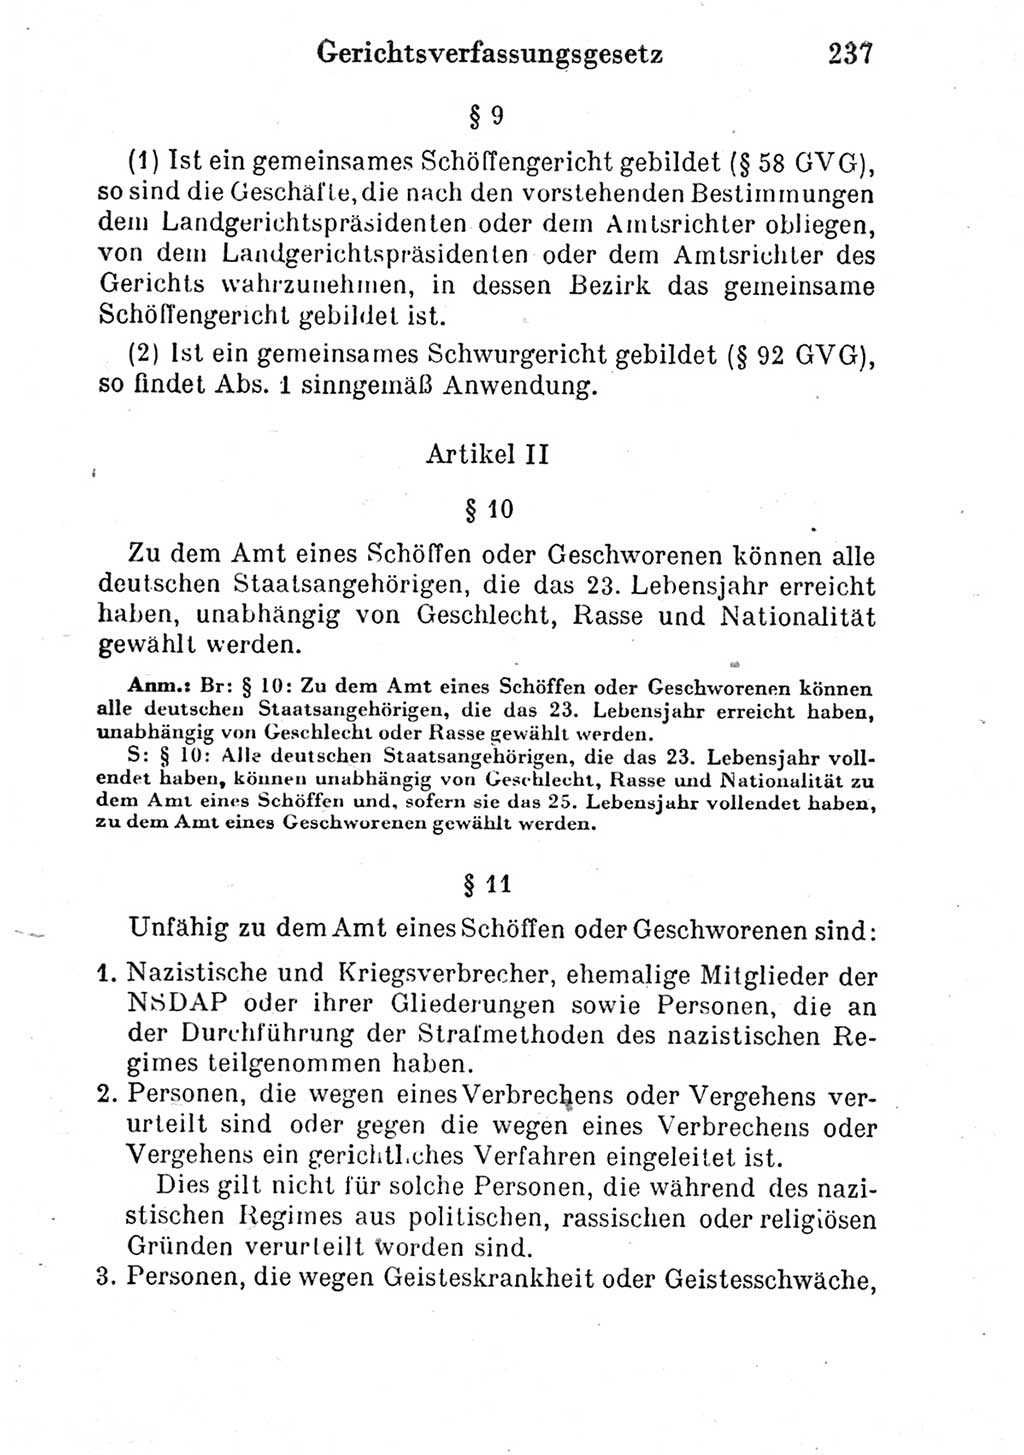 Strafprozeßordnung (StPO), Gerichtsverfassungsgesetz (GVG) und zahlreiche Nebengesetze der Deutschen Demokratischen Republik (DDR) 1950, Seite 237 (StPO GVG Ges. DDR 1950, S. 237)